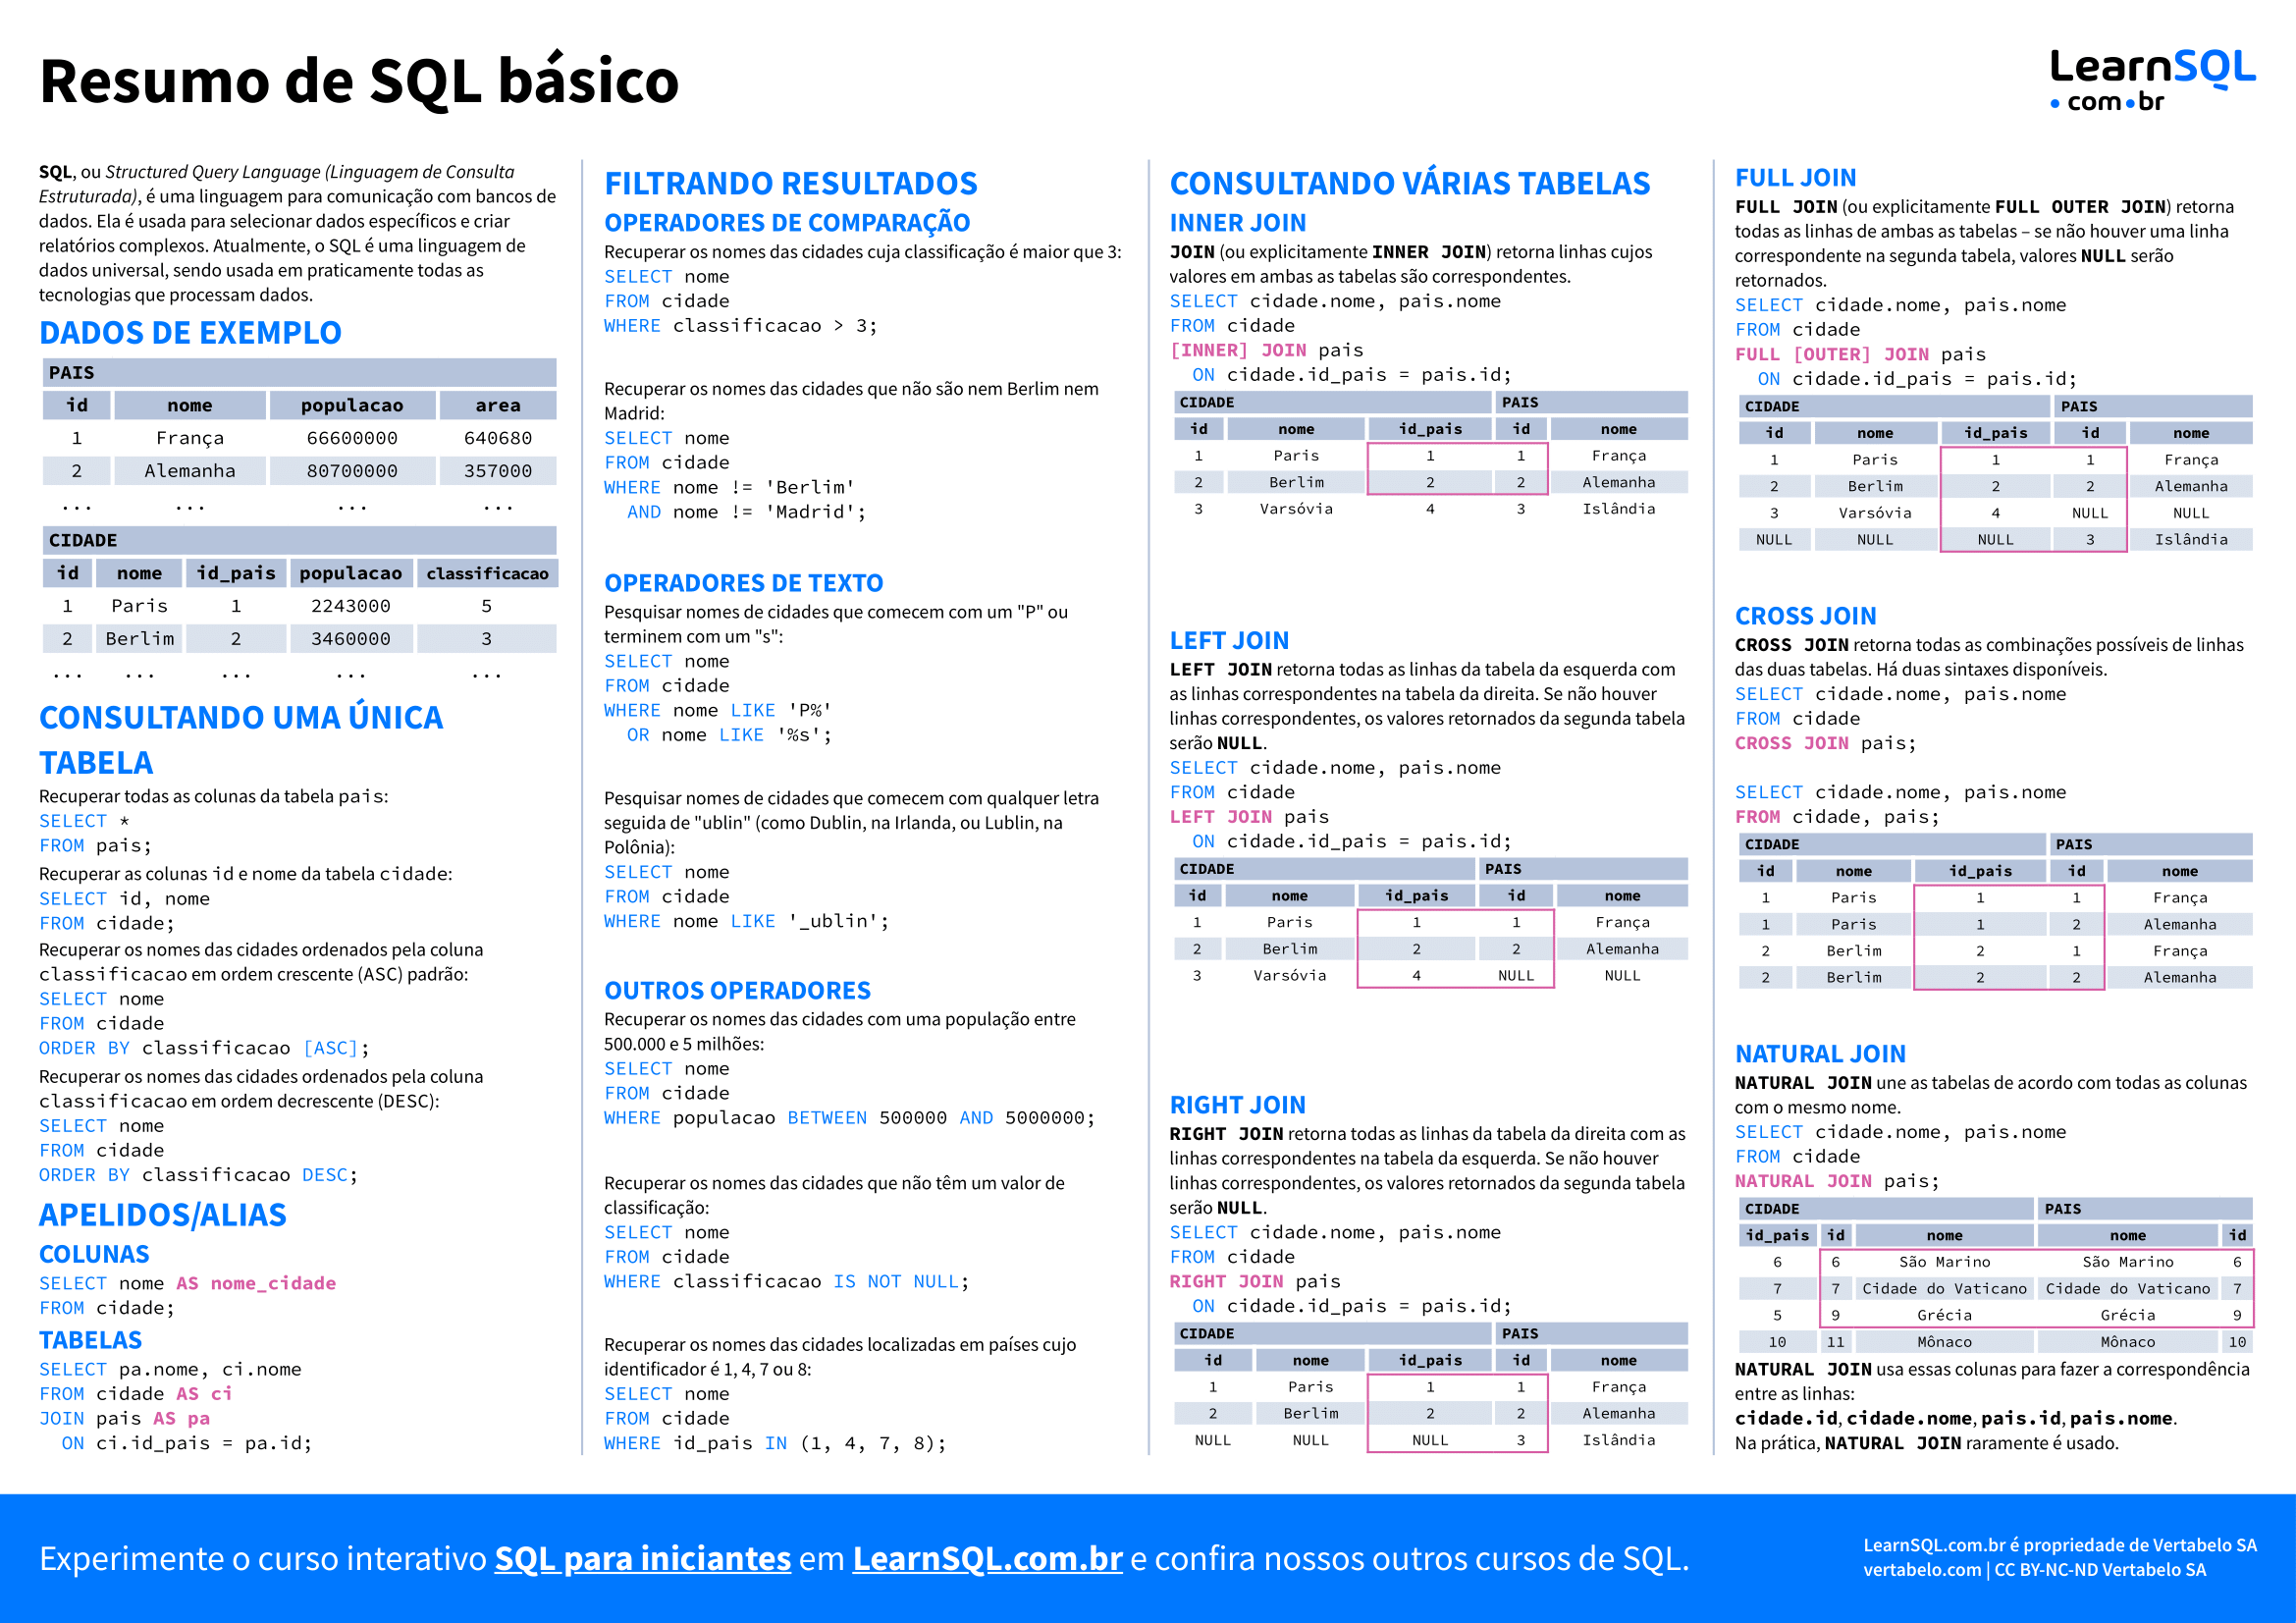 Primeira página do Resumo de conceitos básicos de SQL 